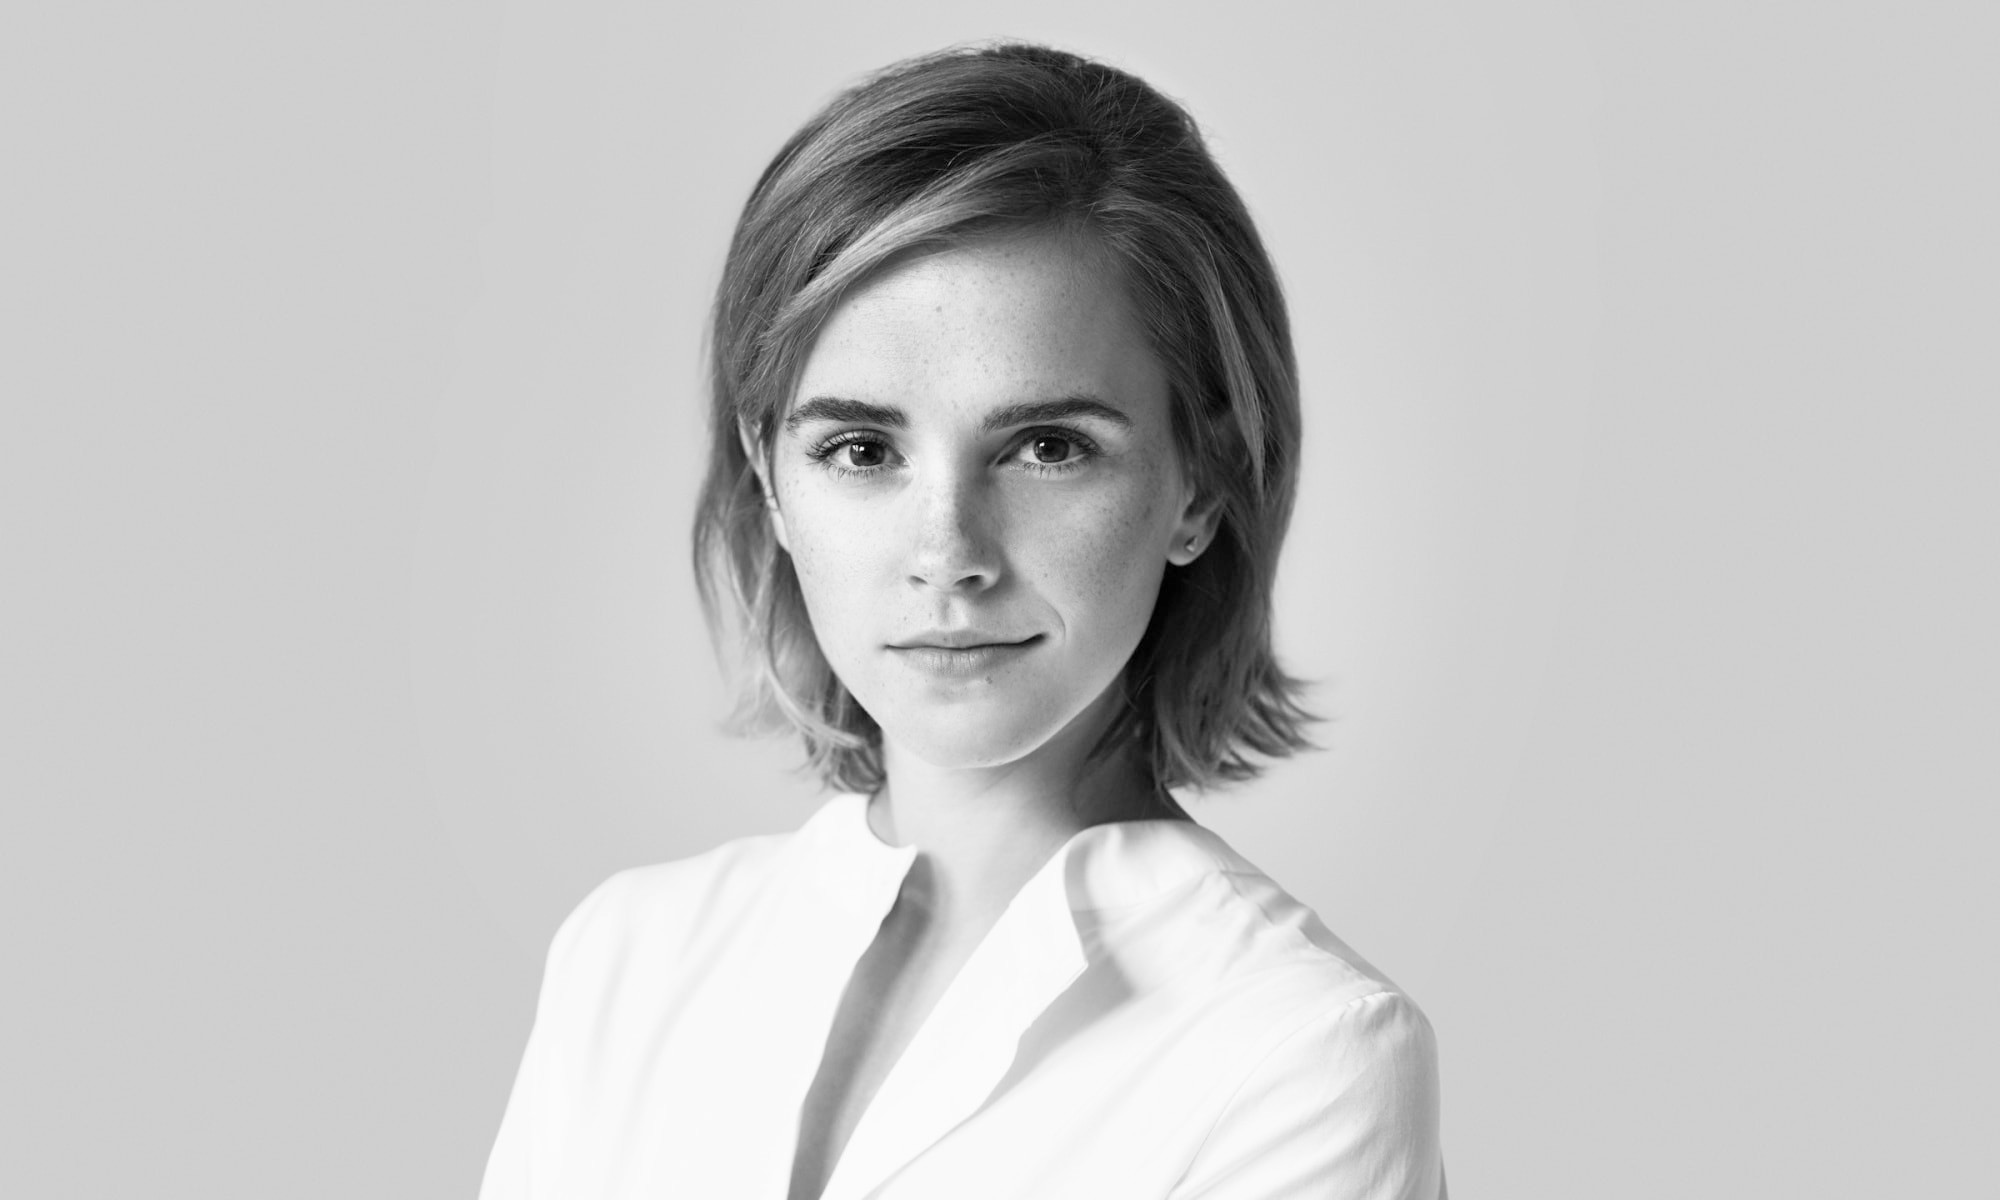 Emma Watson 加入 Kering 集团董事会，任可持续发展主席